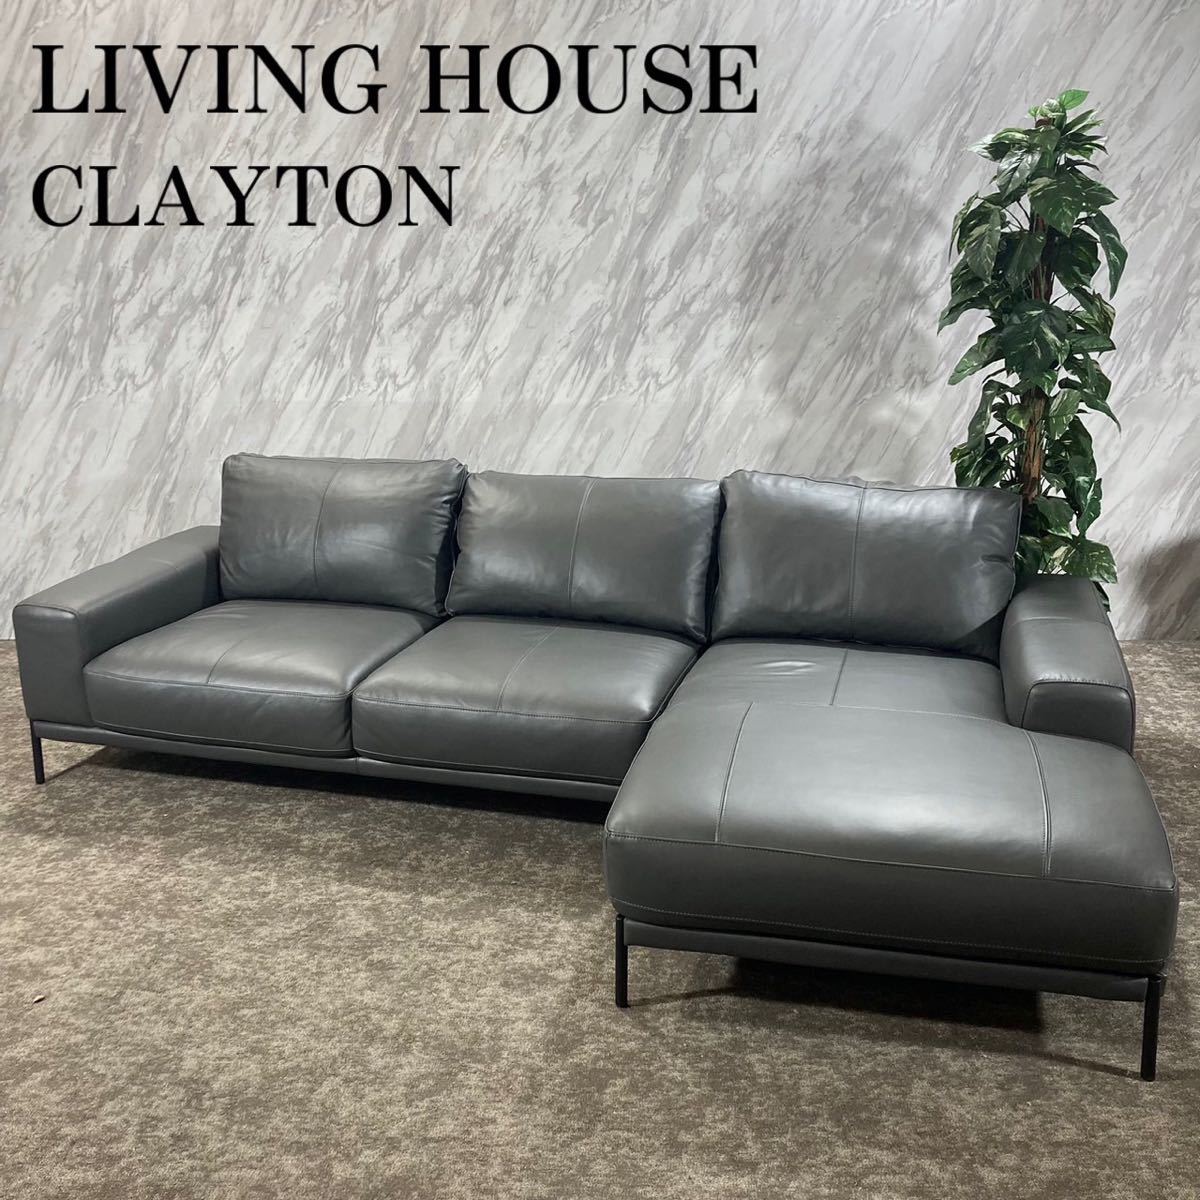 人気商品の LIVING K601 カウチソファ クレイトン CLAYTON HOUSE 革製